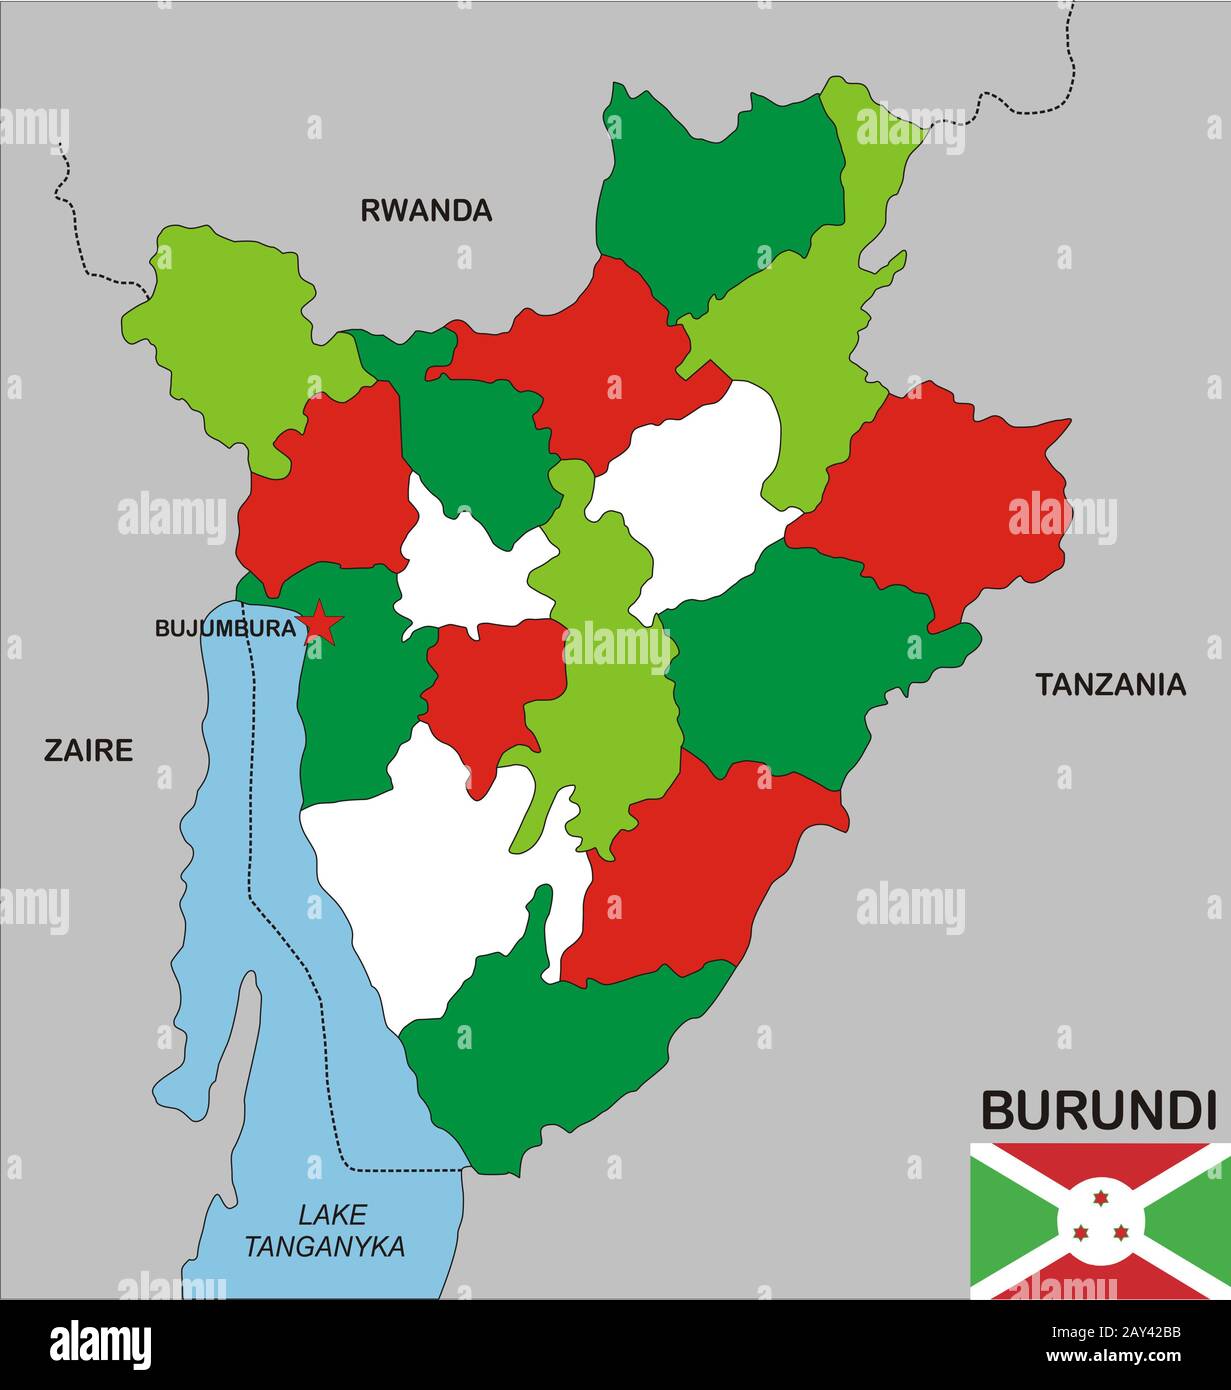 Burundi map Stock Photo - Alamy